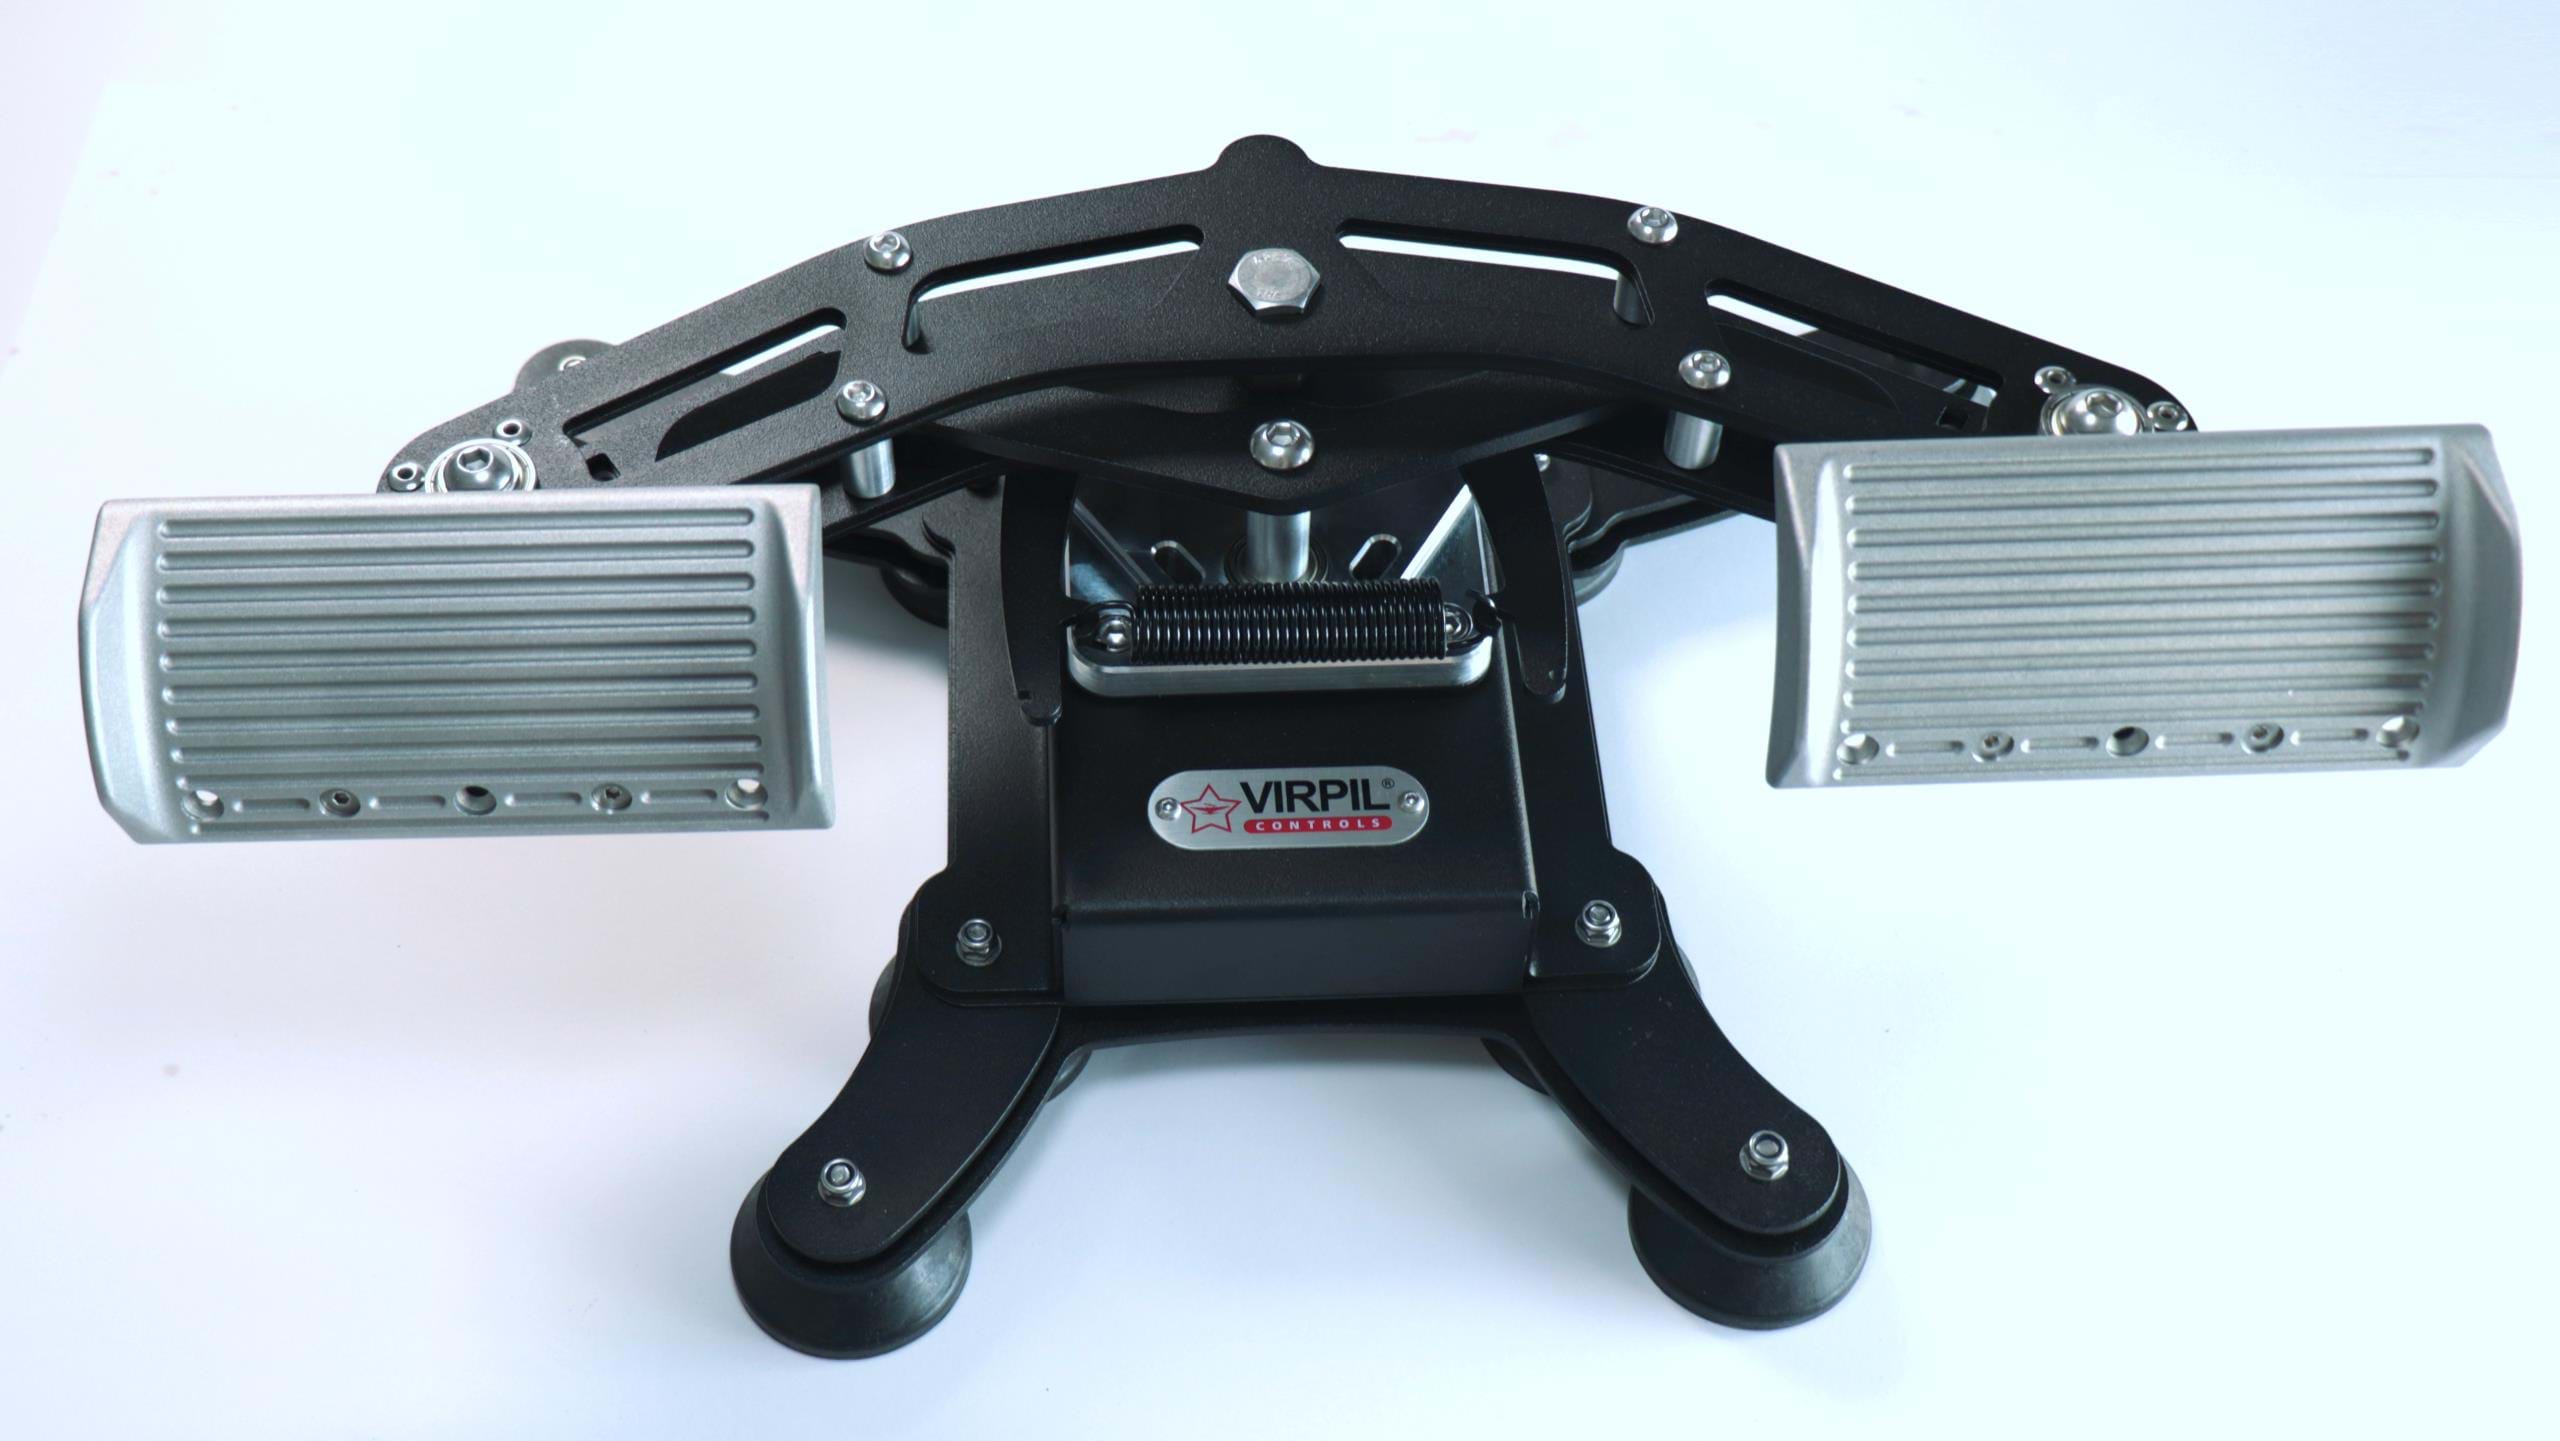 VIRPIL VPC WarBRD Rudder Pedals